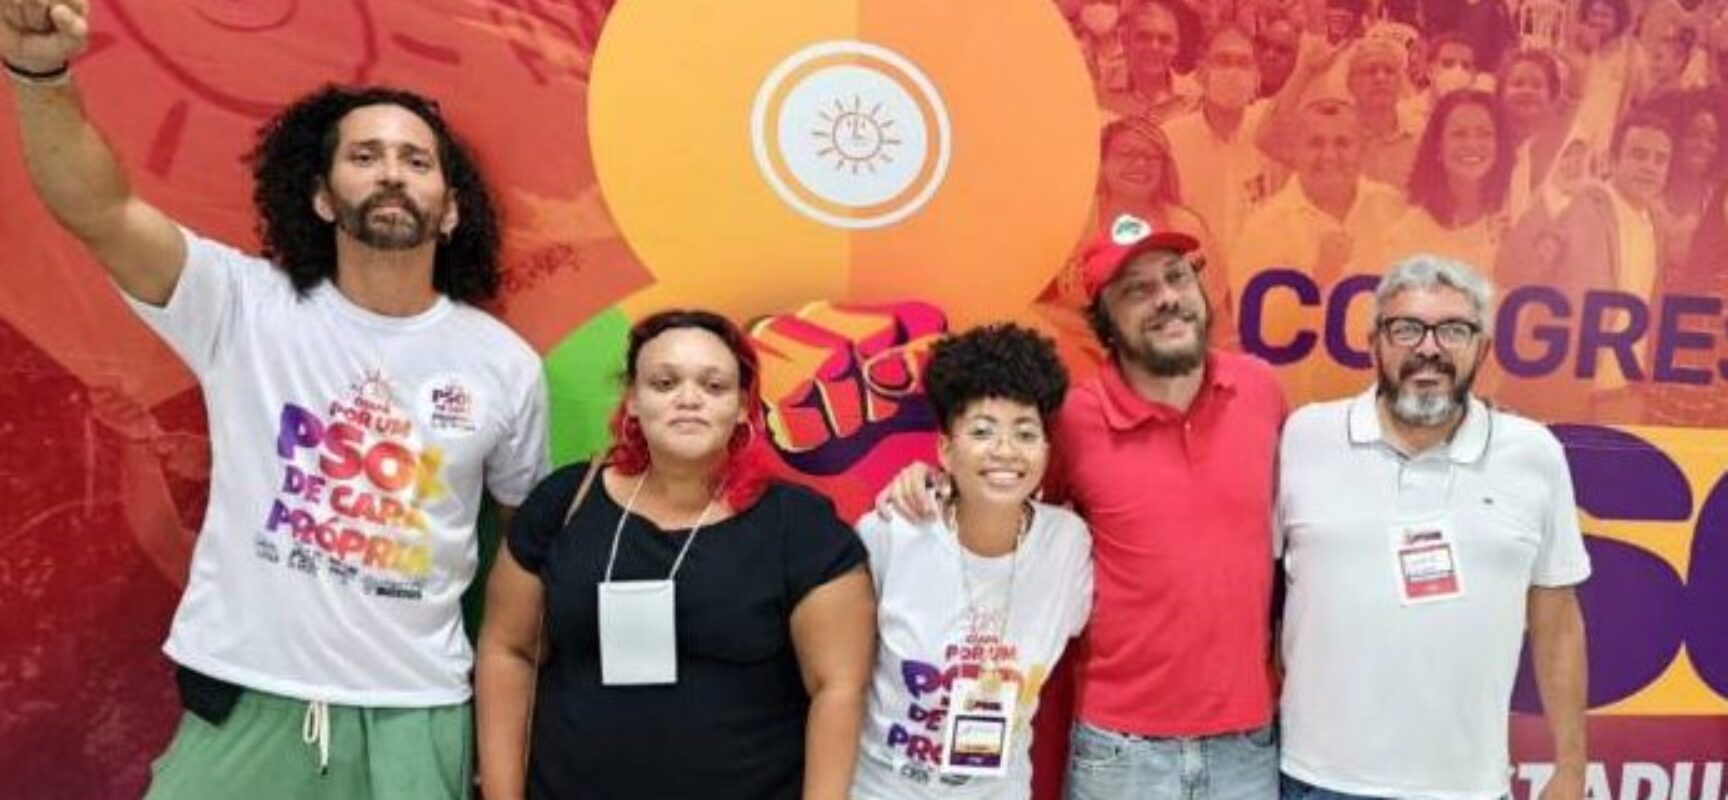 A militância de Ilhéus marcou presença no oitavo congresso estadual do PSOL, realizado neste domingo,  17/09, em Salvador.